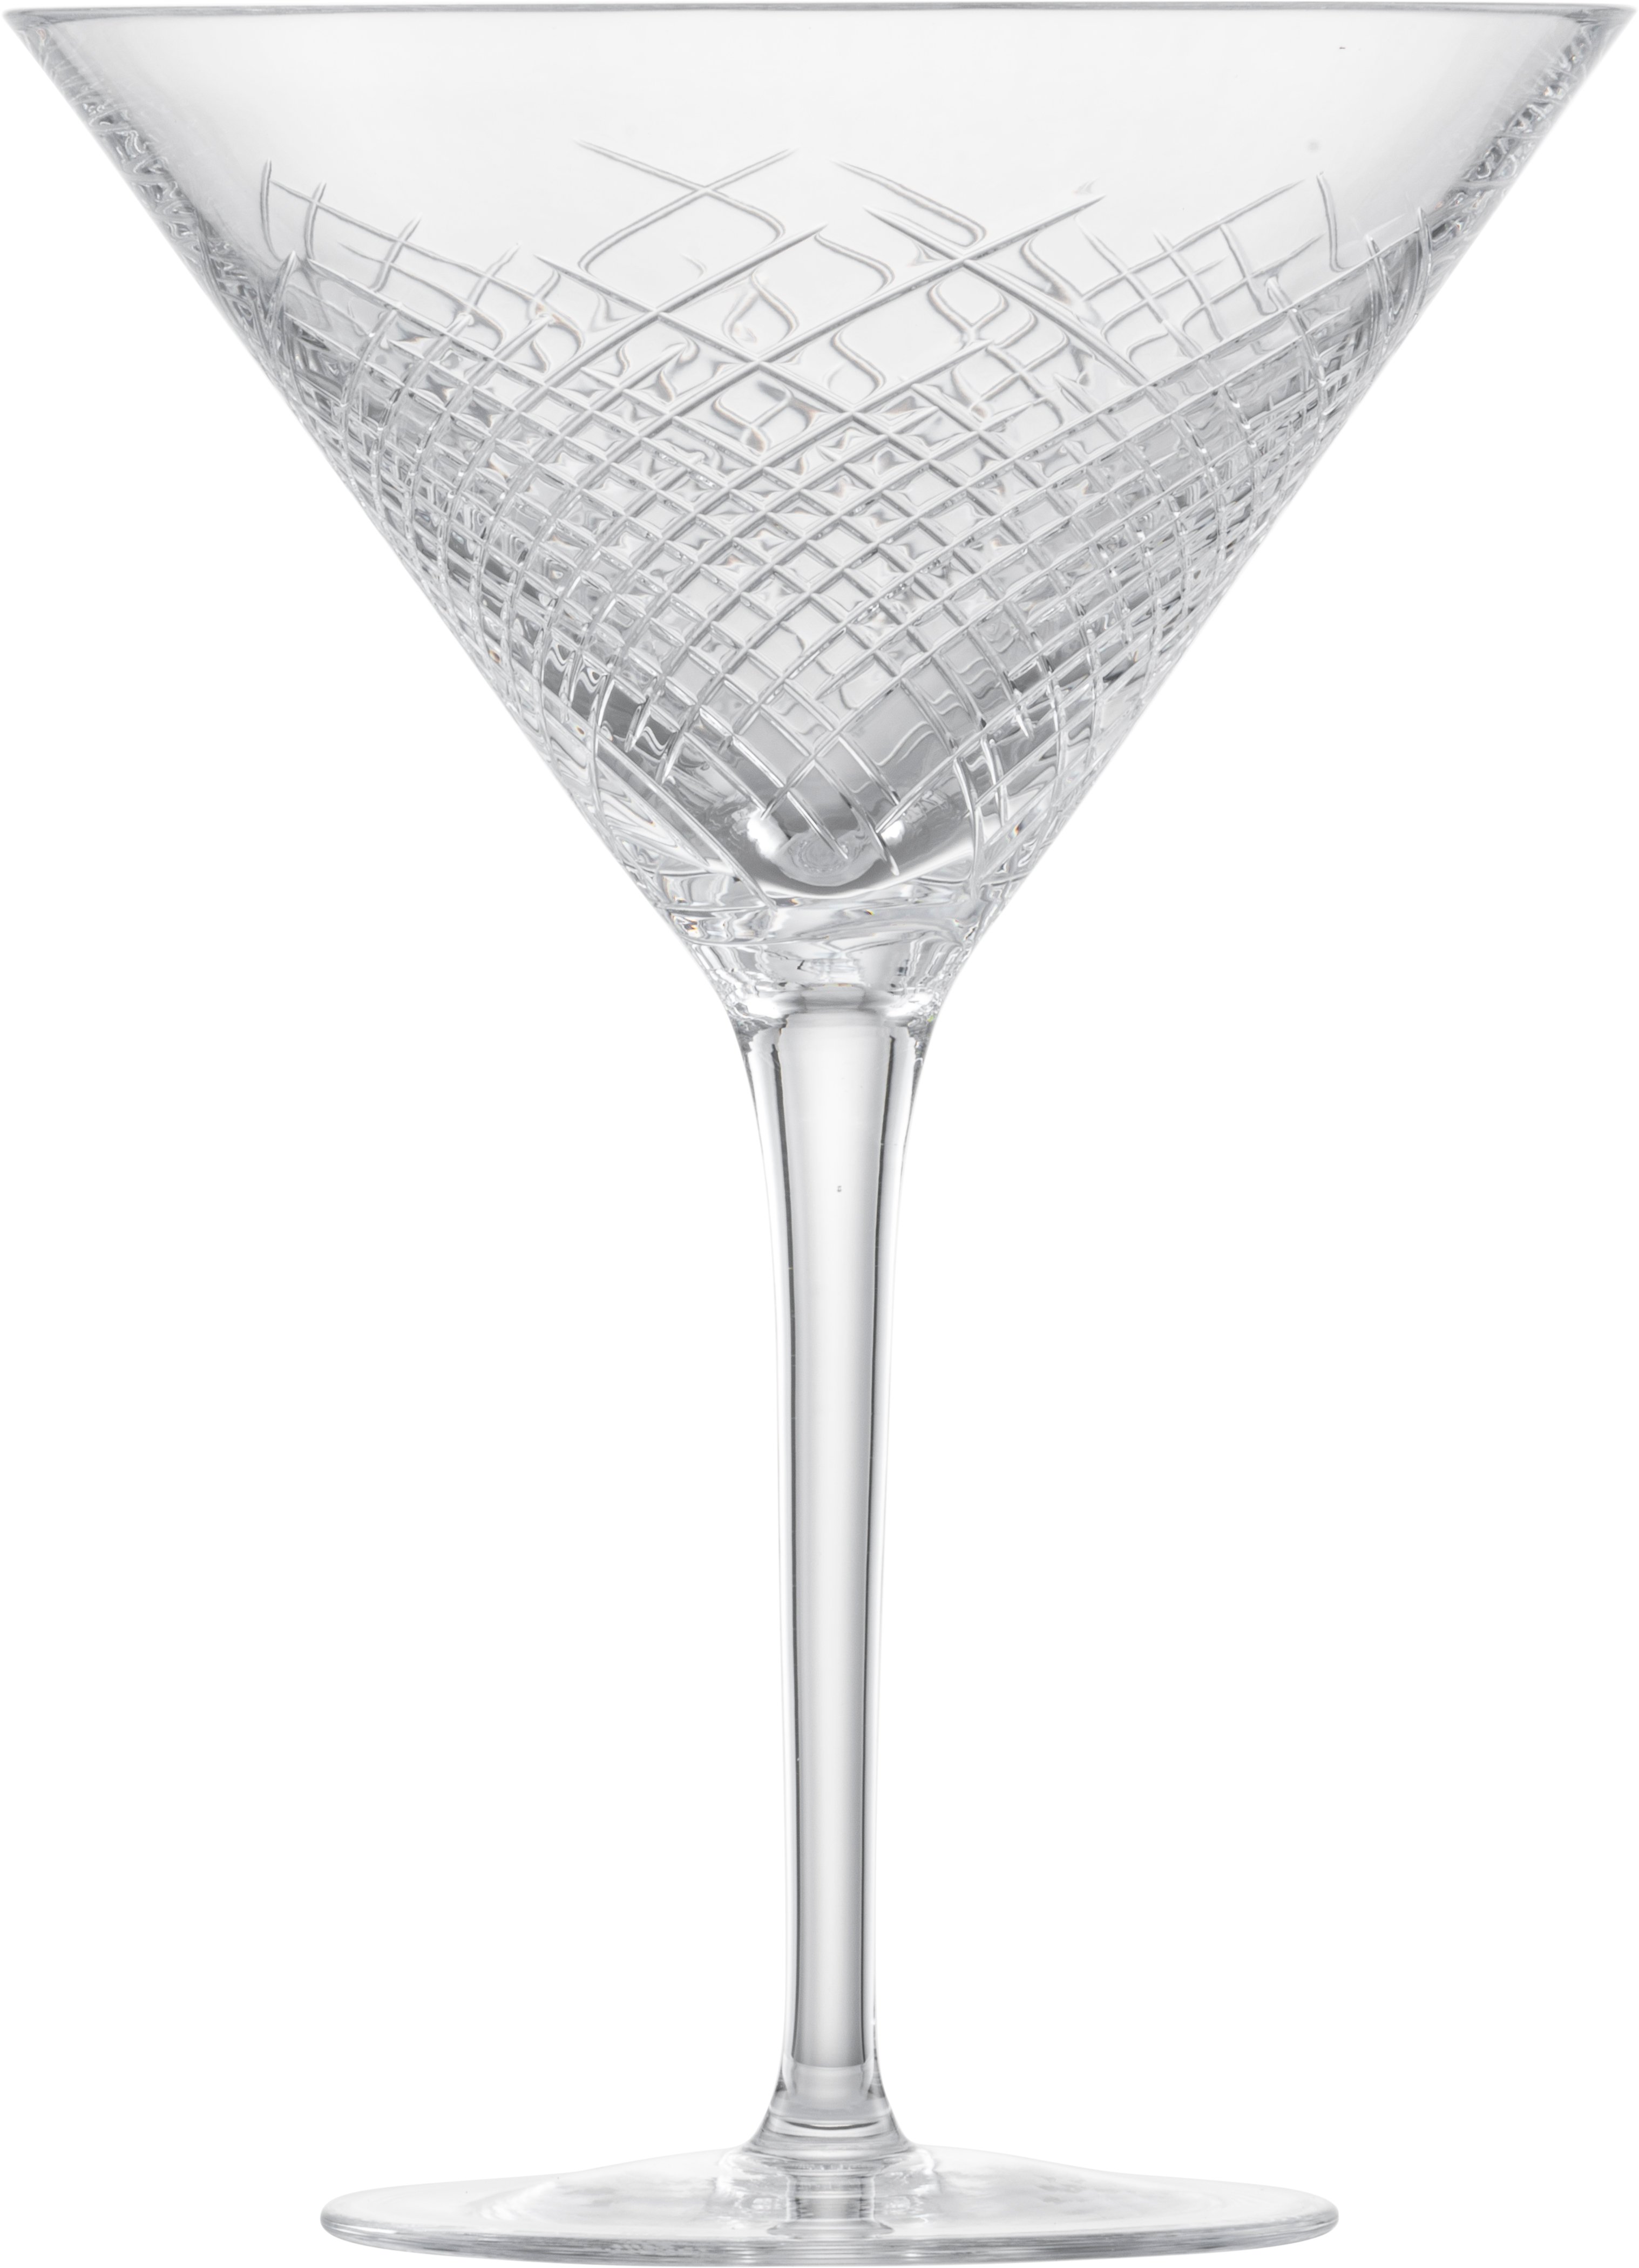 Knicklicht 17cm hohes Martini Leuchtglas leuchtendes Cocktail Glas Party Glas 